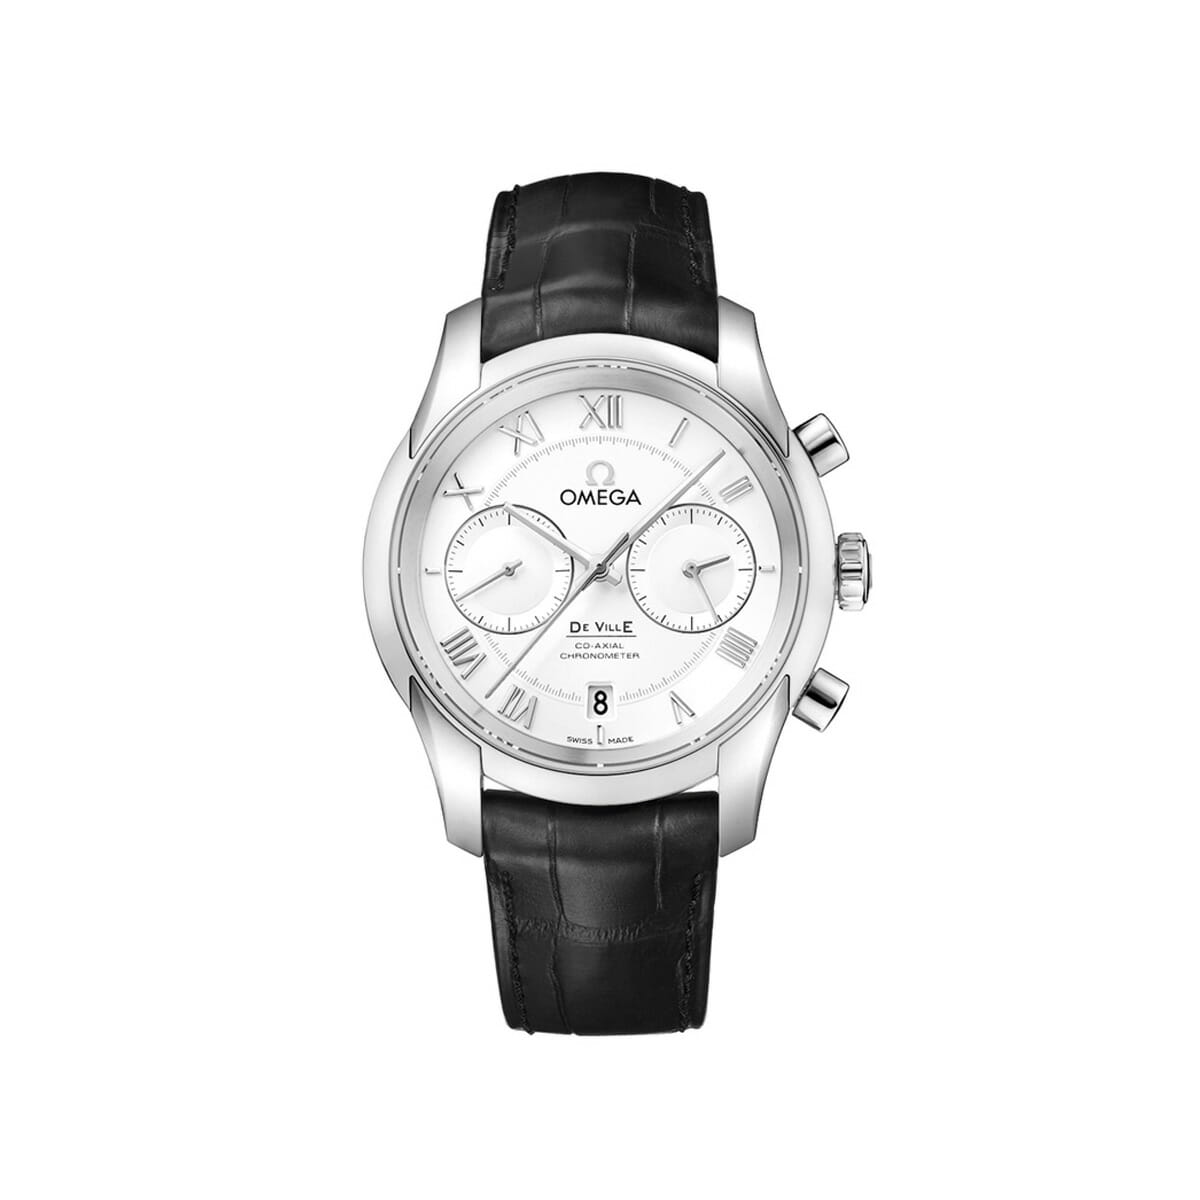 De Ville Hour Vision Co-Axial Chronometer 42mm Watch